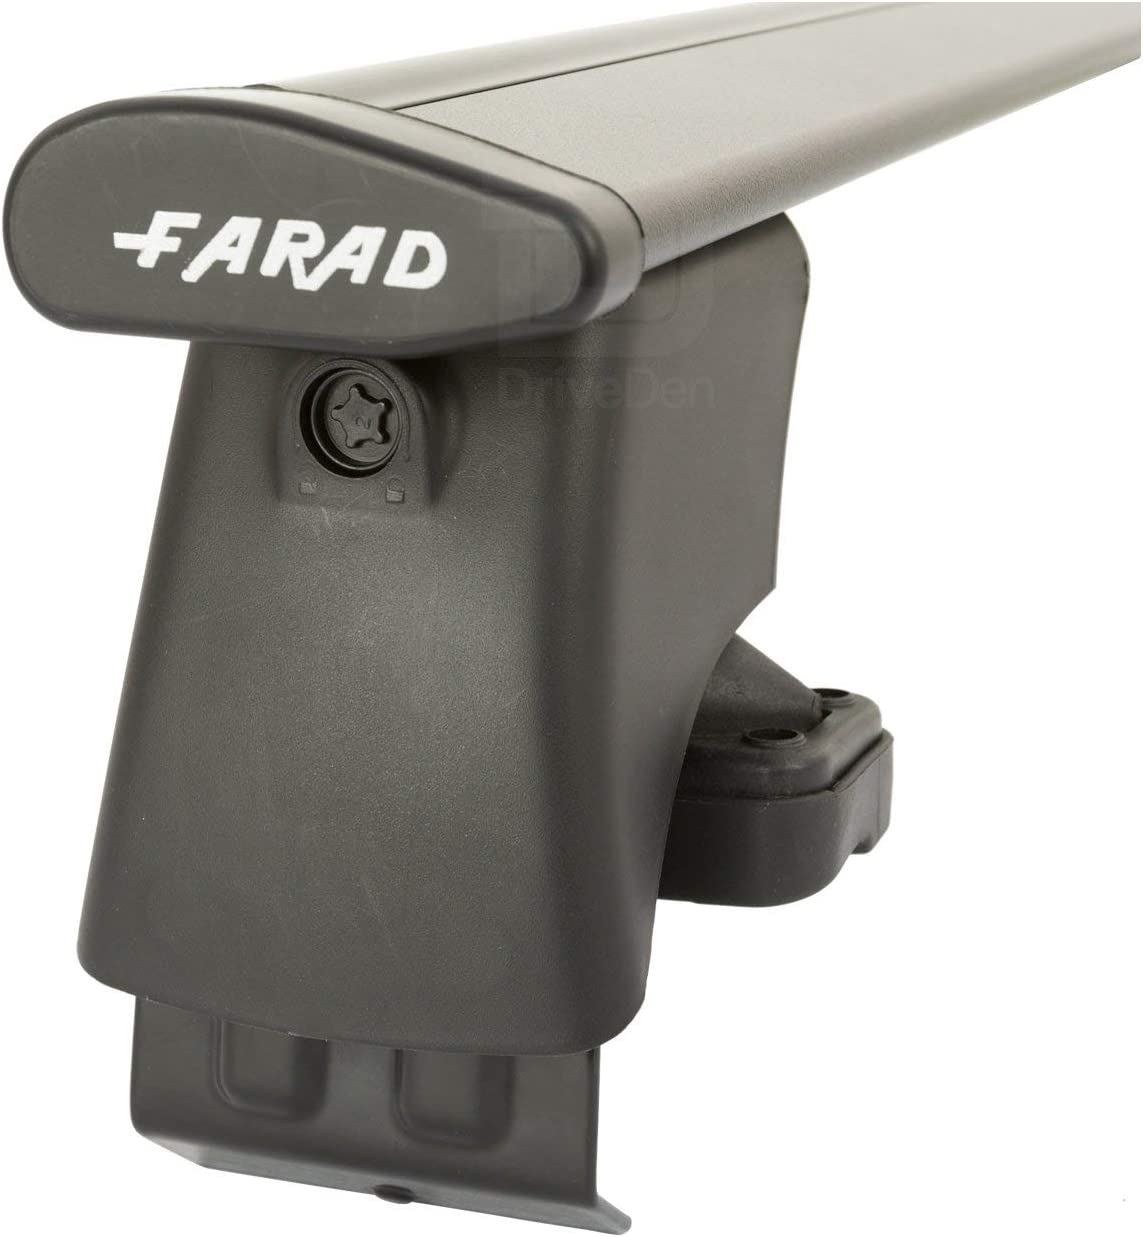 FARAD-Kit H2 per barre portatutto - Volkswagen Golf 5 2003-2008 (senza corrimano)